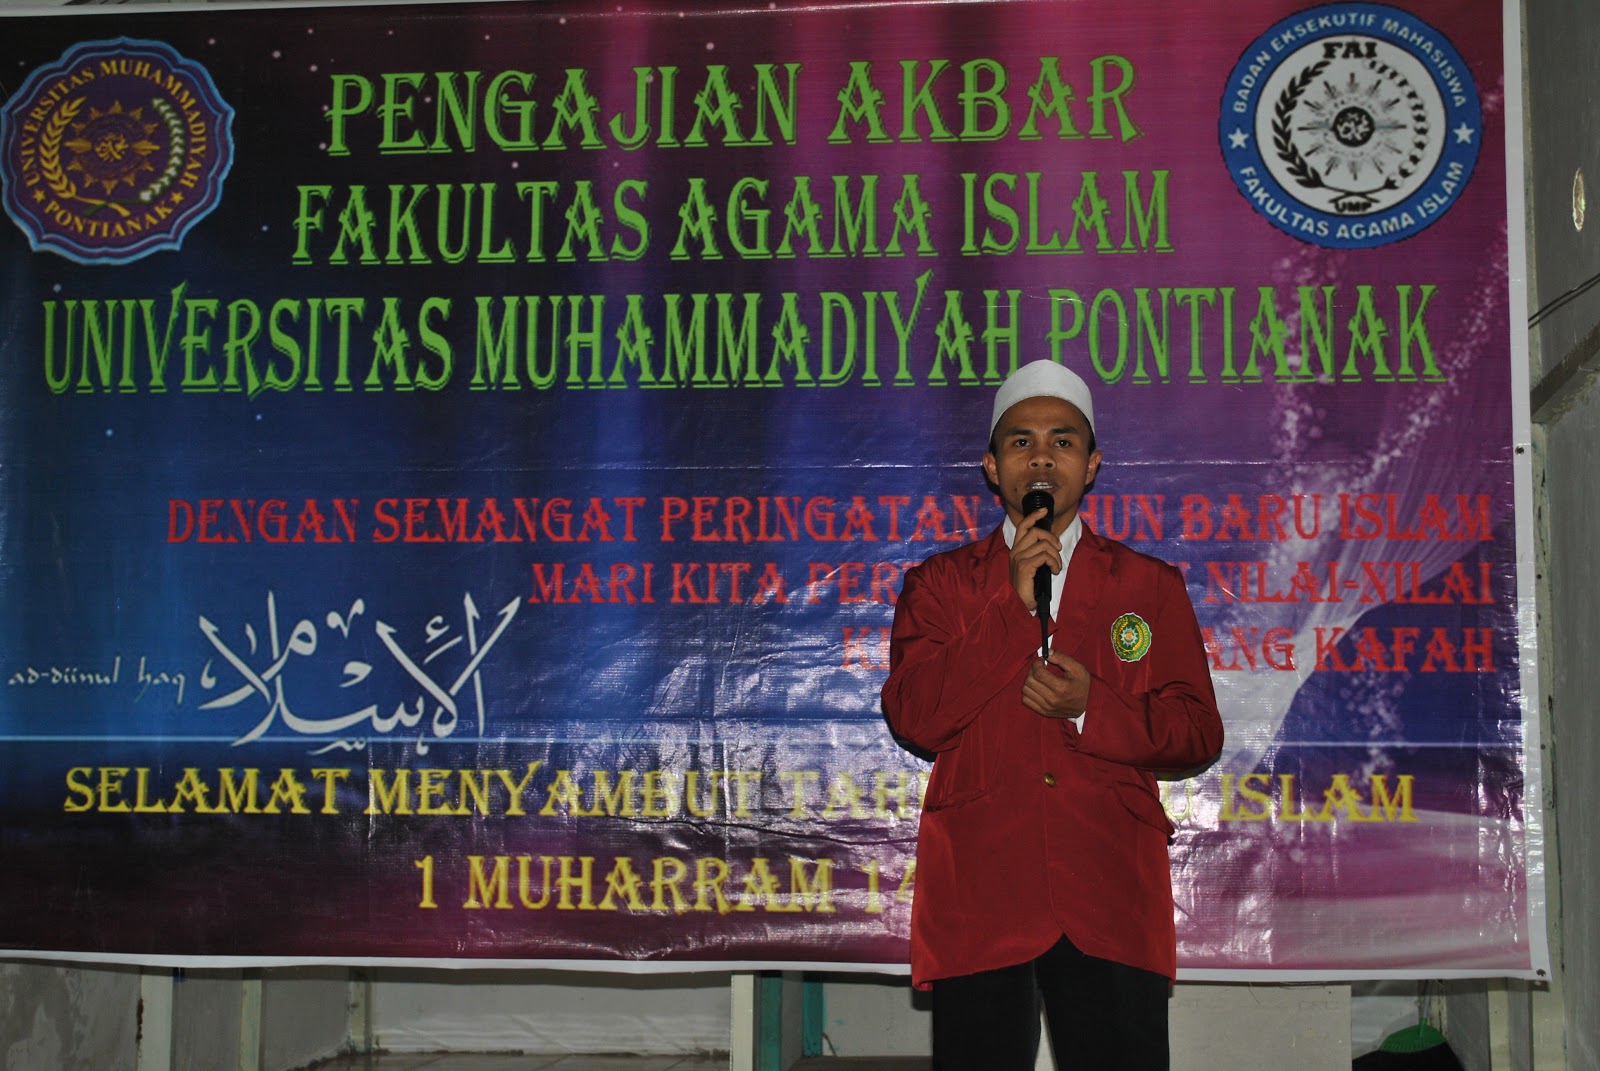 Fakultas Agama Islam: Pengajian Akbar FAI ( 1 Muharram 